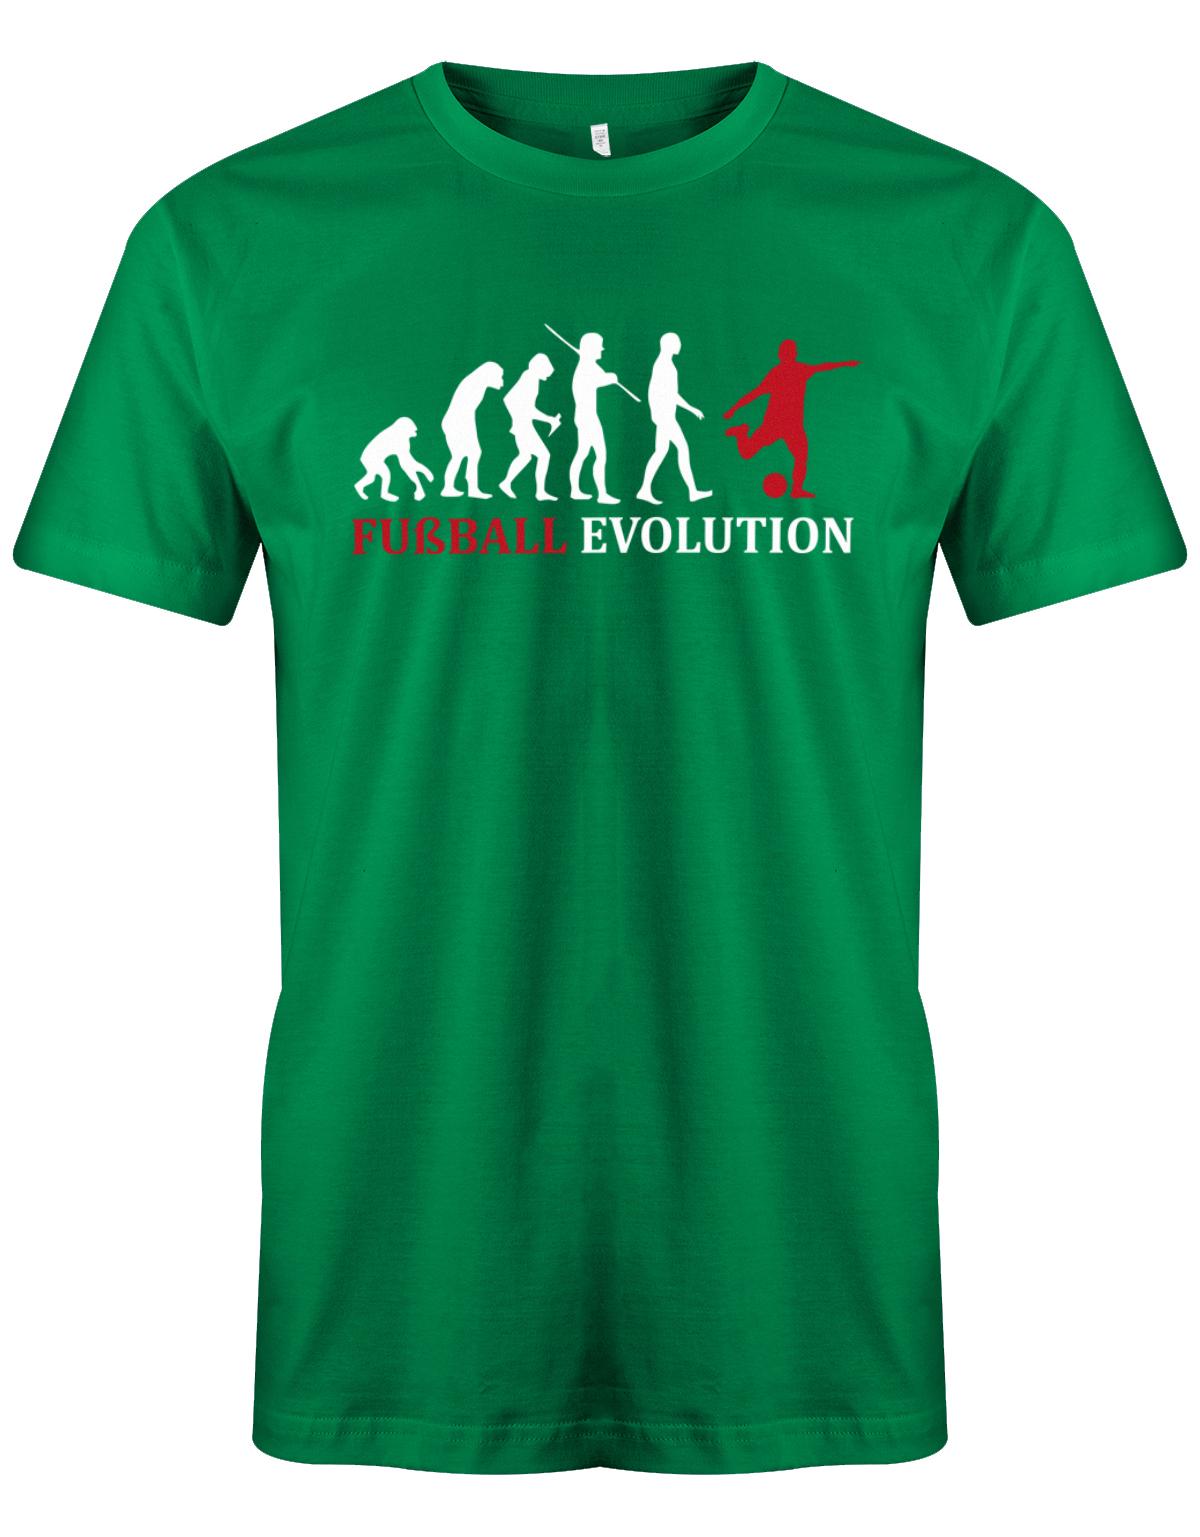 Fussball-Evolution-Herren-Shirt-Gr-n-Rot